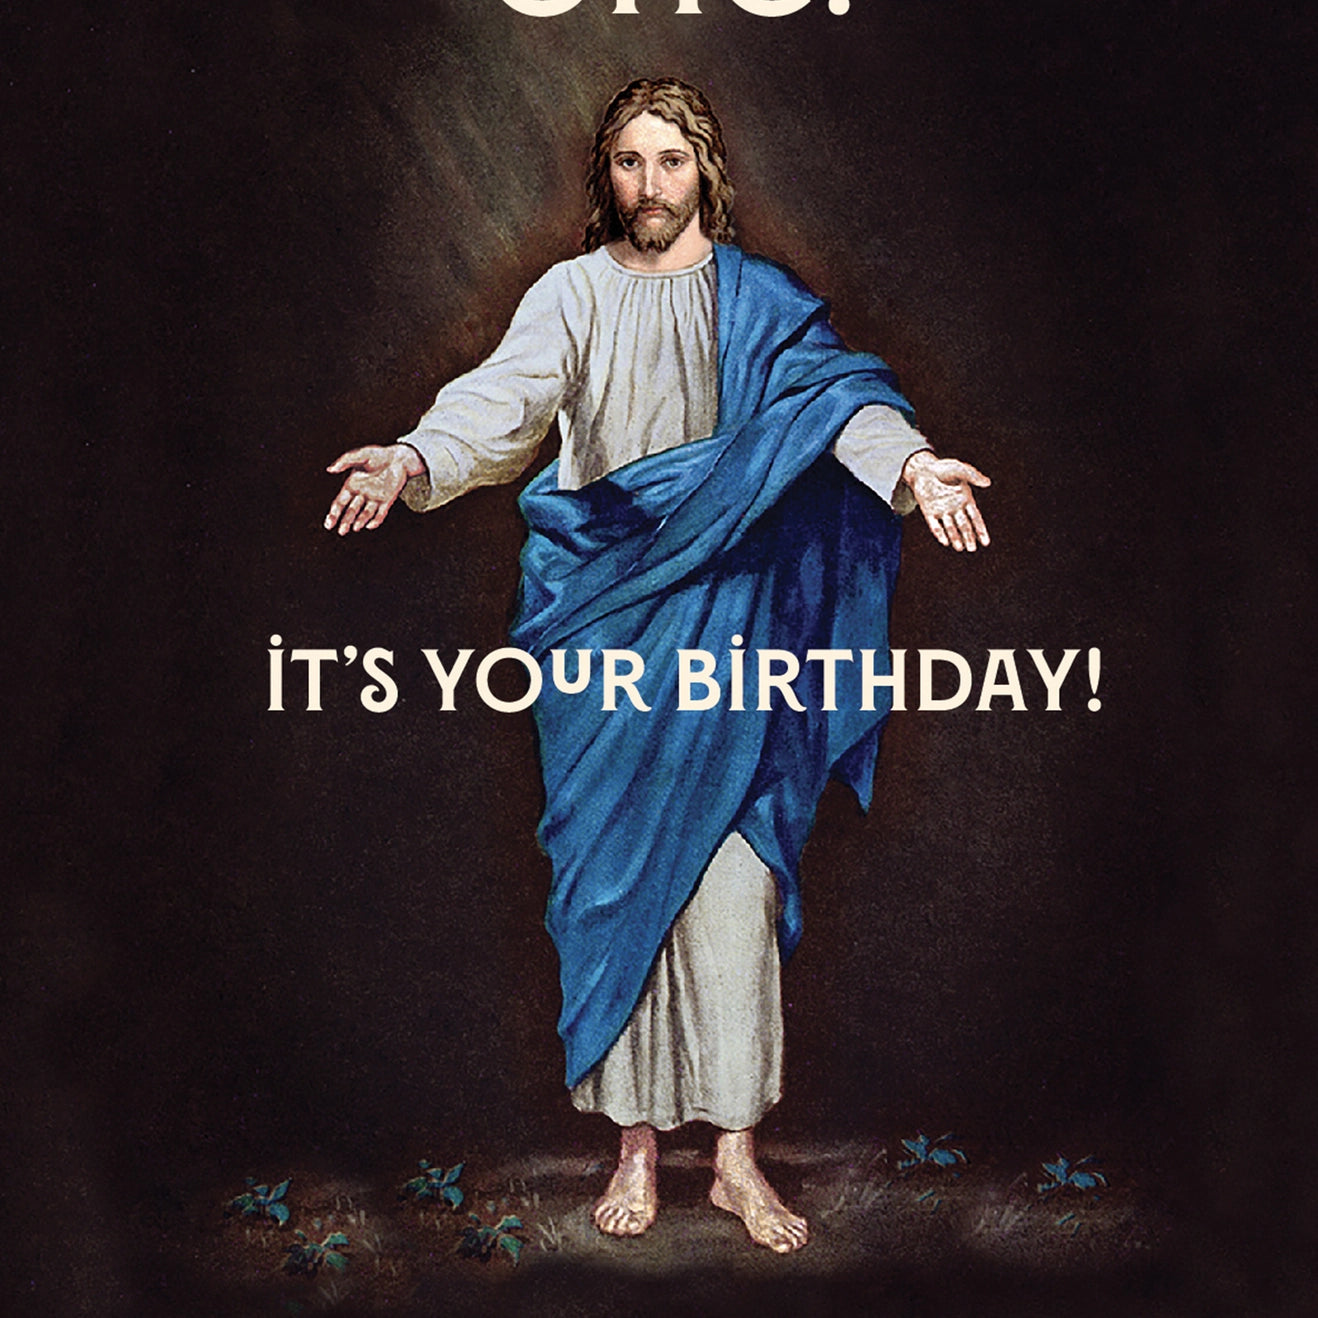 funny jesus birthday pictures